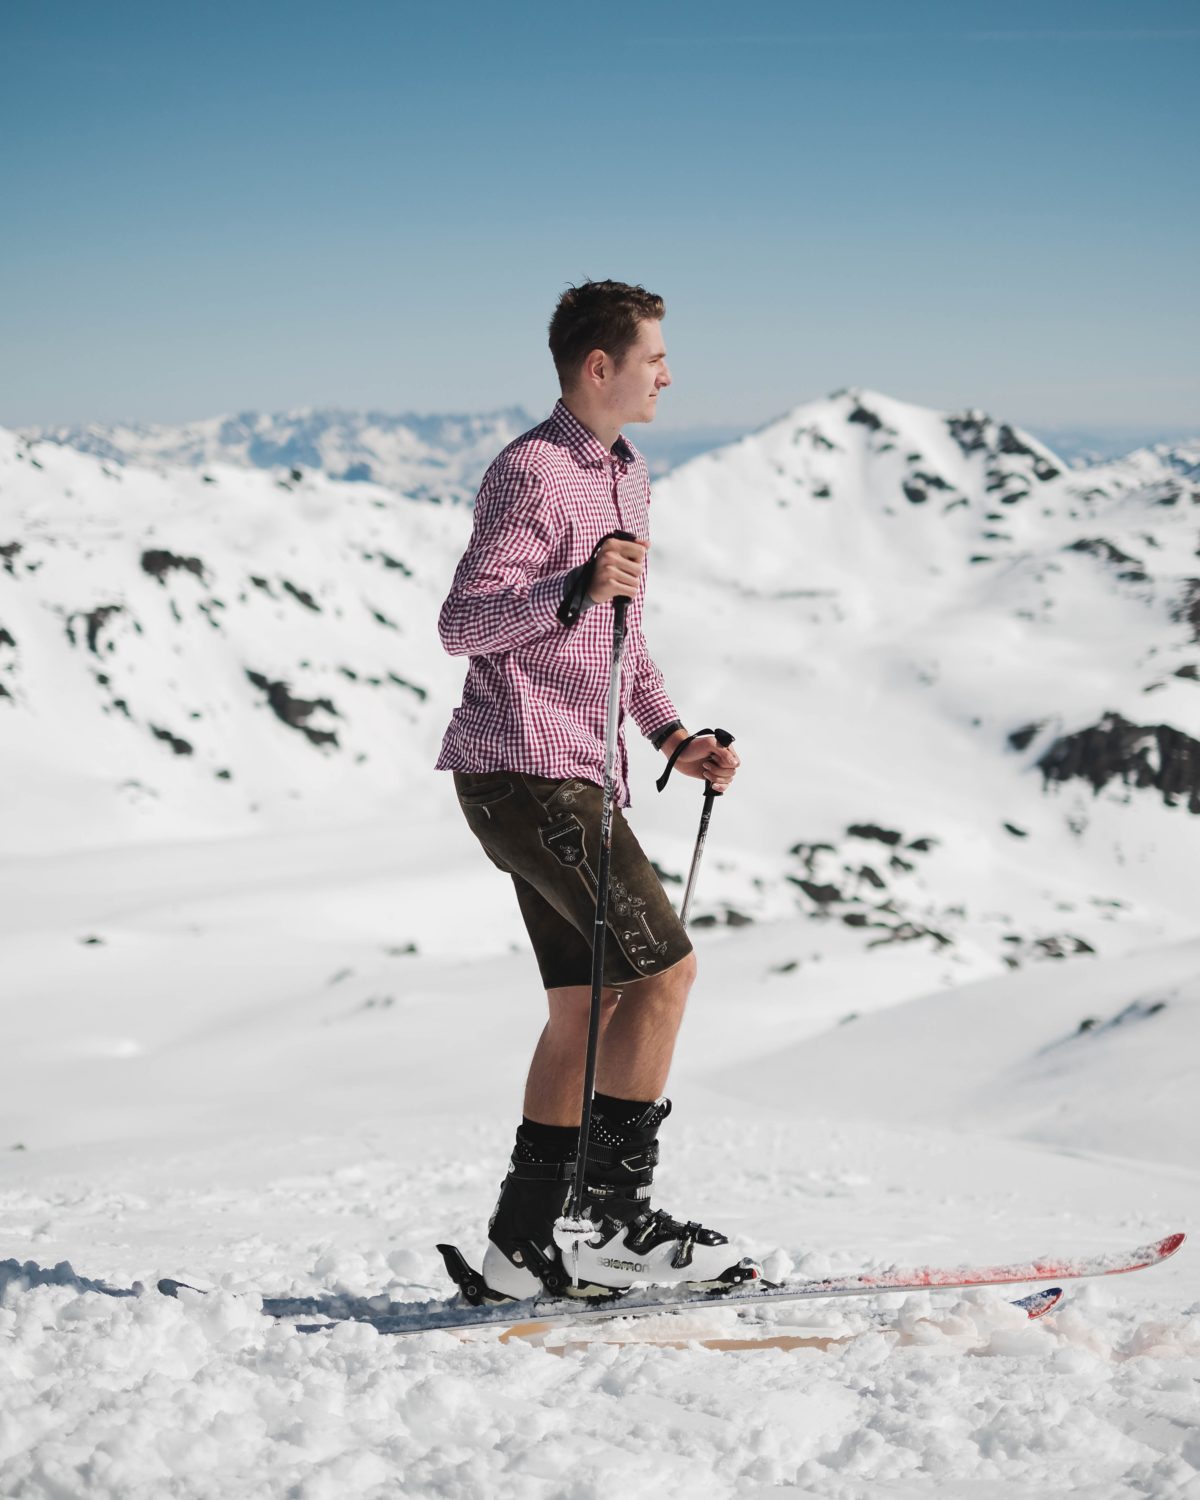 Young man skiing wearing a shirt and shorts.